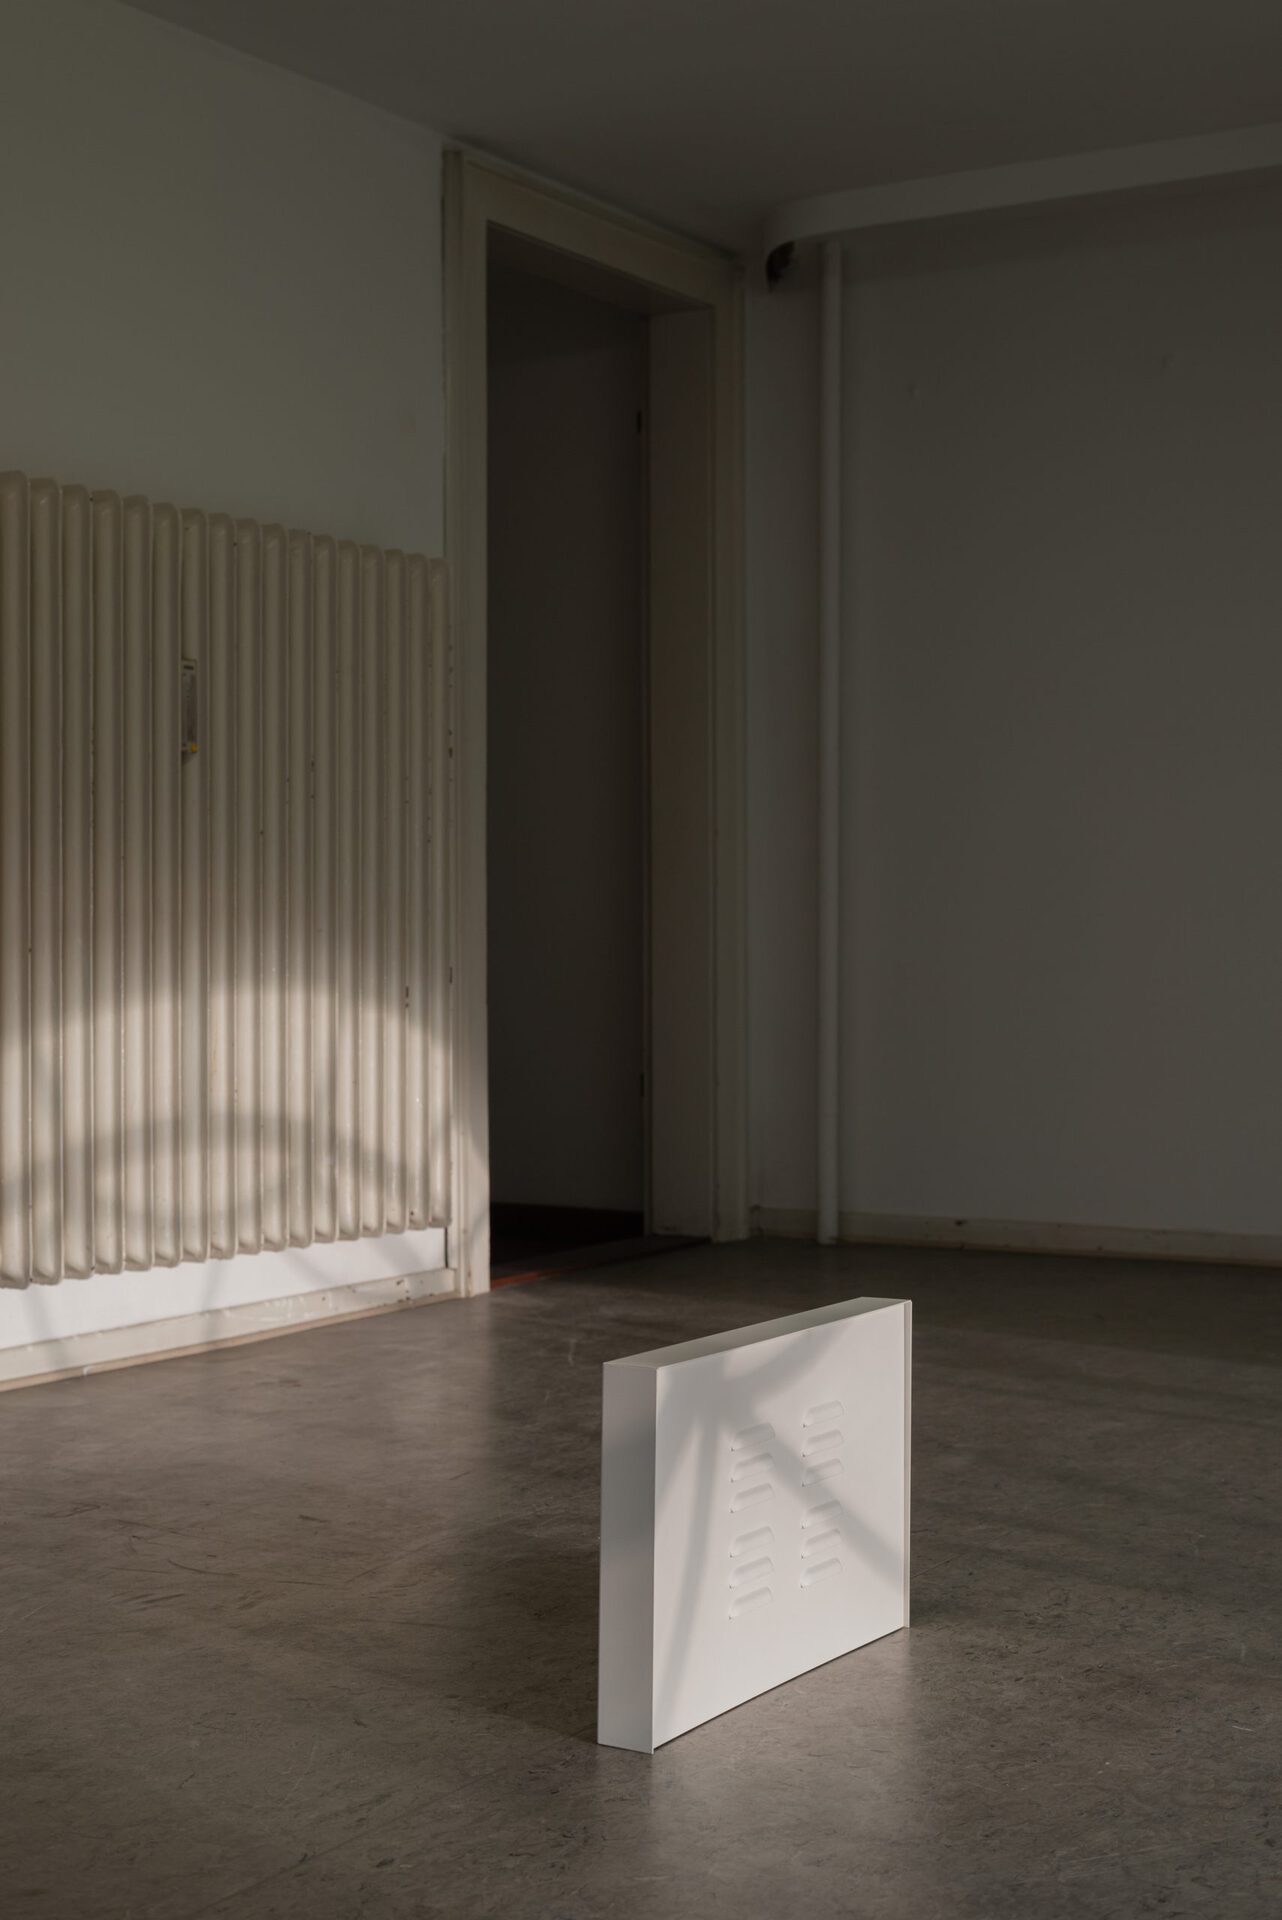 Jesse Stecklow, Untitled (Air Sampler), 2019-2021, Installation View at Kunstverein Braunschweig 2021, Courtesy the artist and Kunstverein Braunschweig. Photo: Stefan Stark